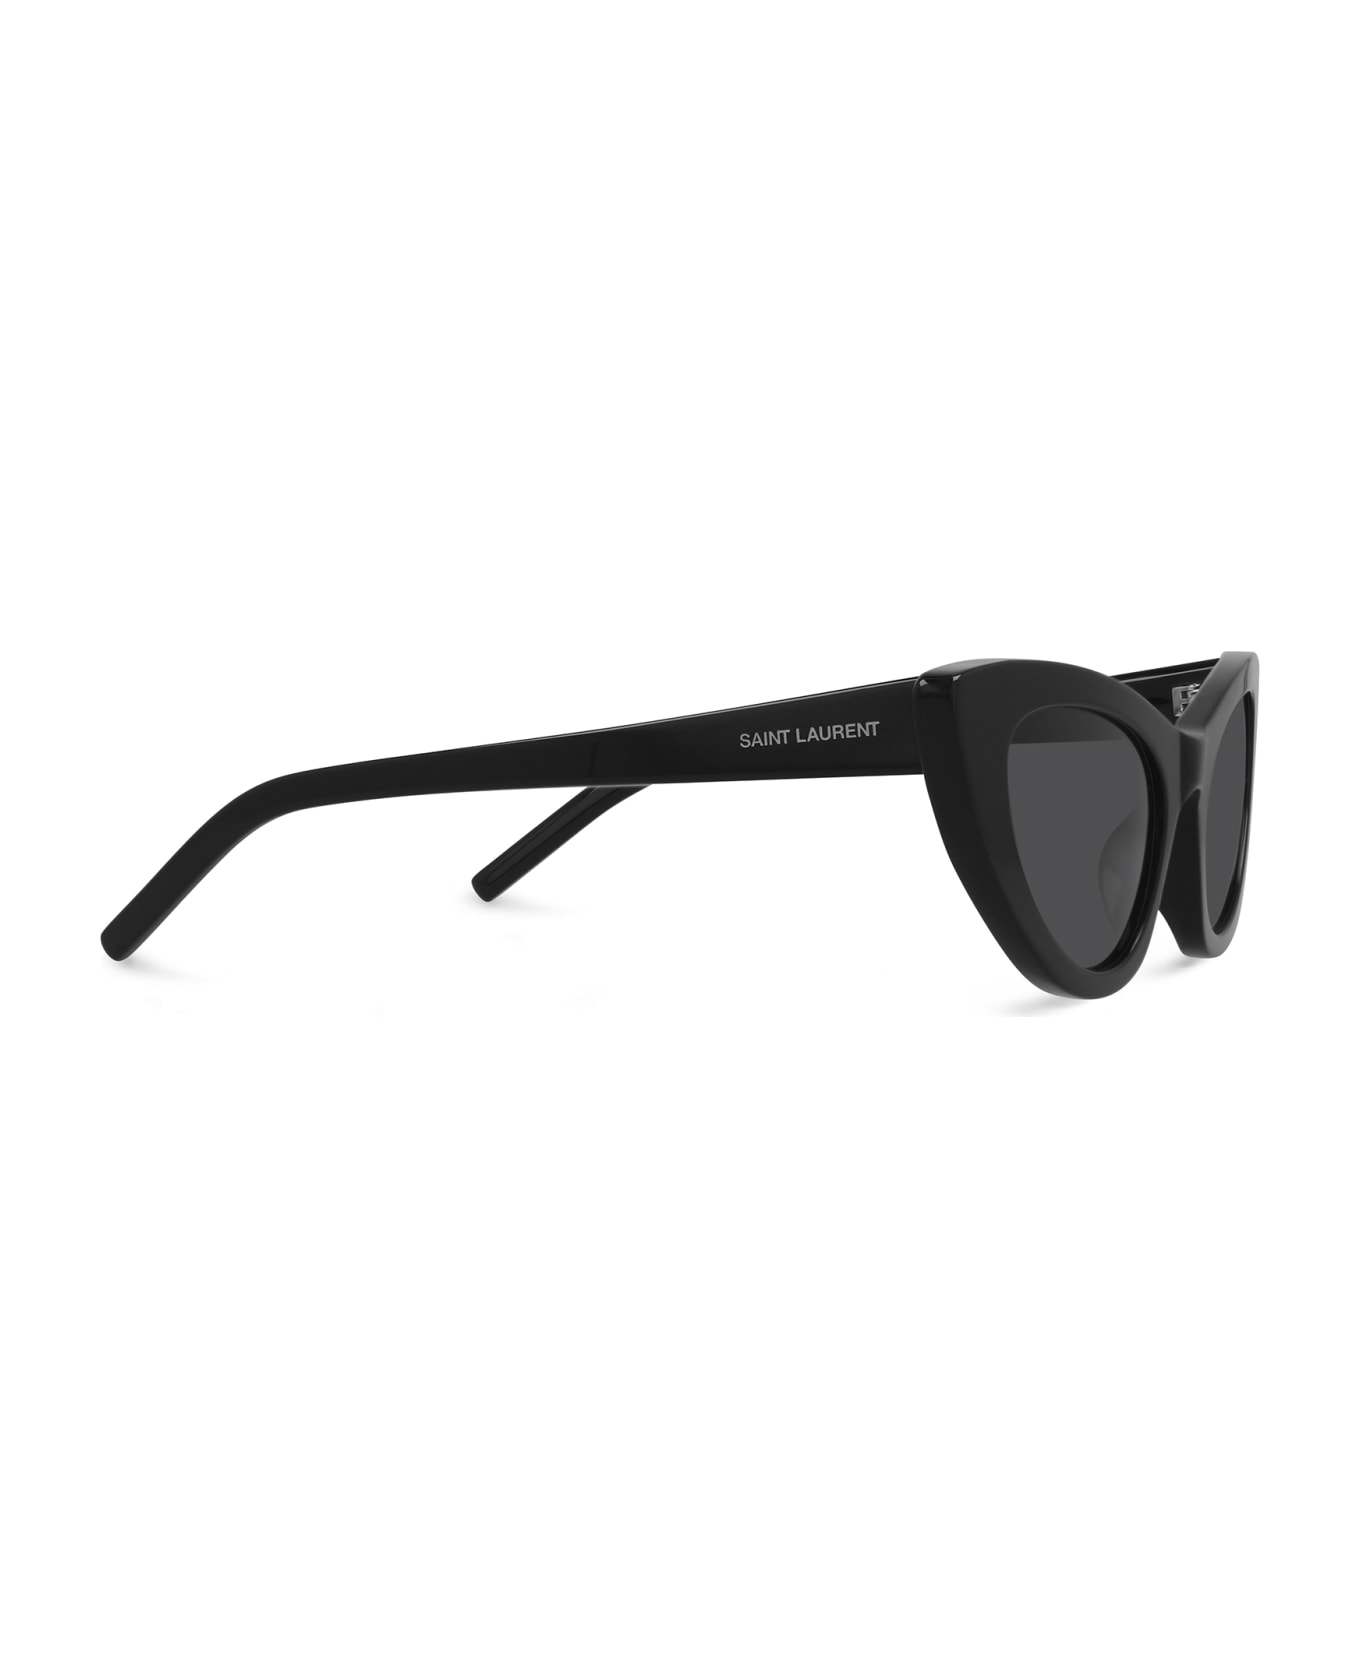 Saint Laurent Eyewear Sl 213 Black Sunglasses - Black